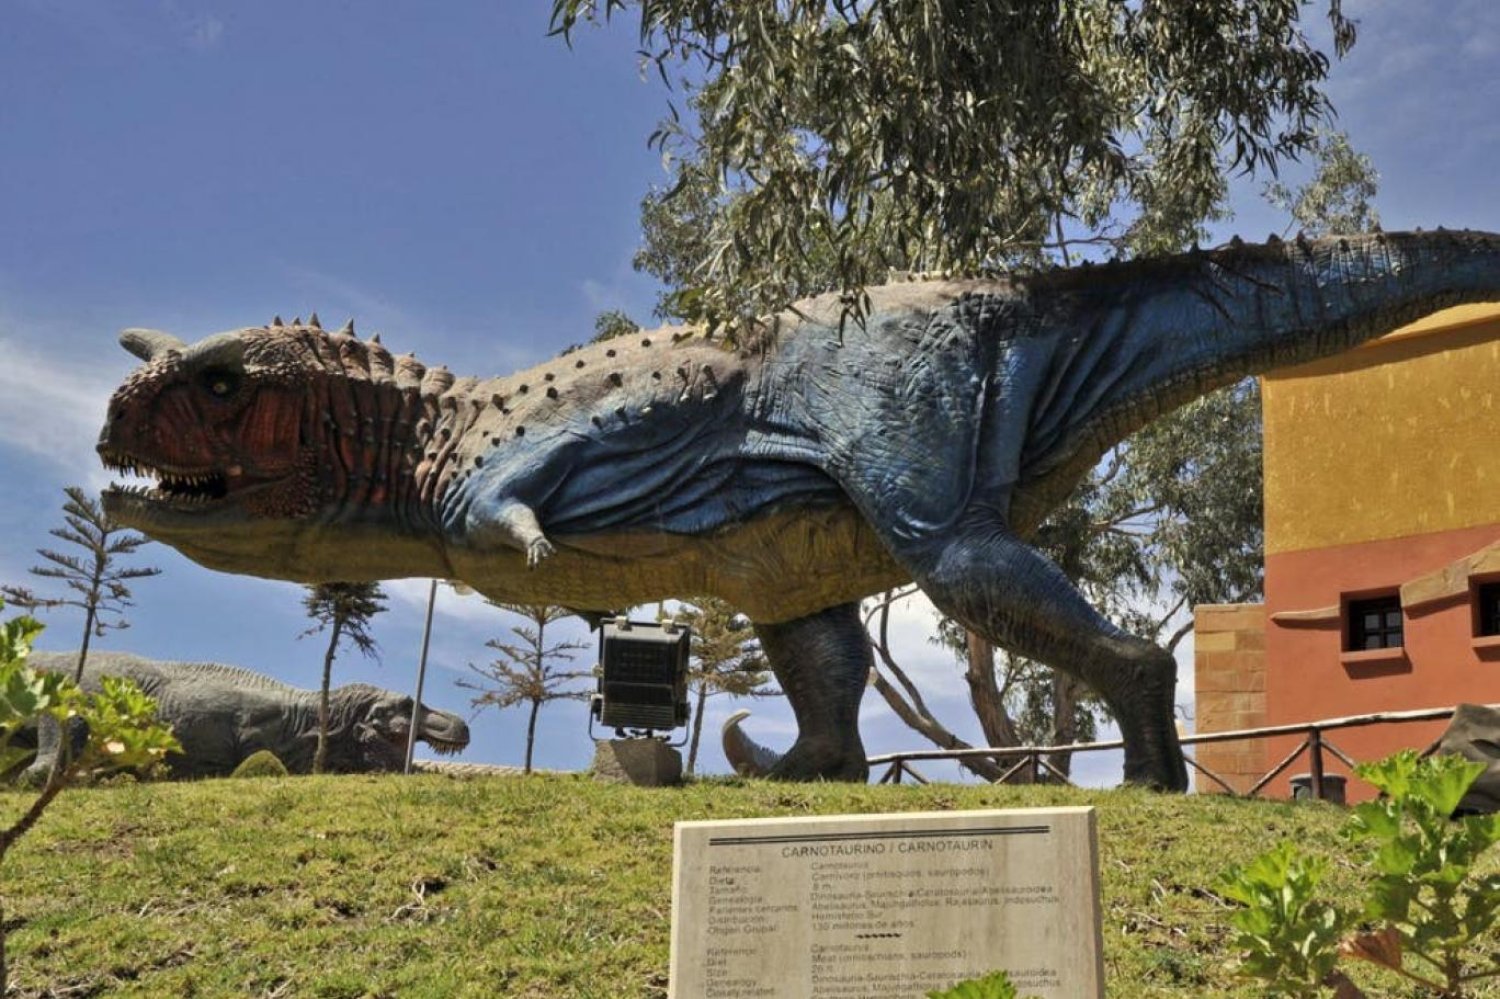 Sucre'in Cal Orckho tepesinde yer alan Kretase Parkı'nda sergilenen Carnotaurus replikasından bir görünüm (AFP)